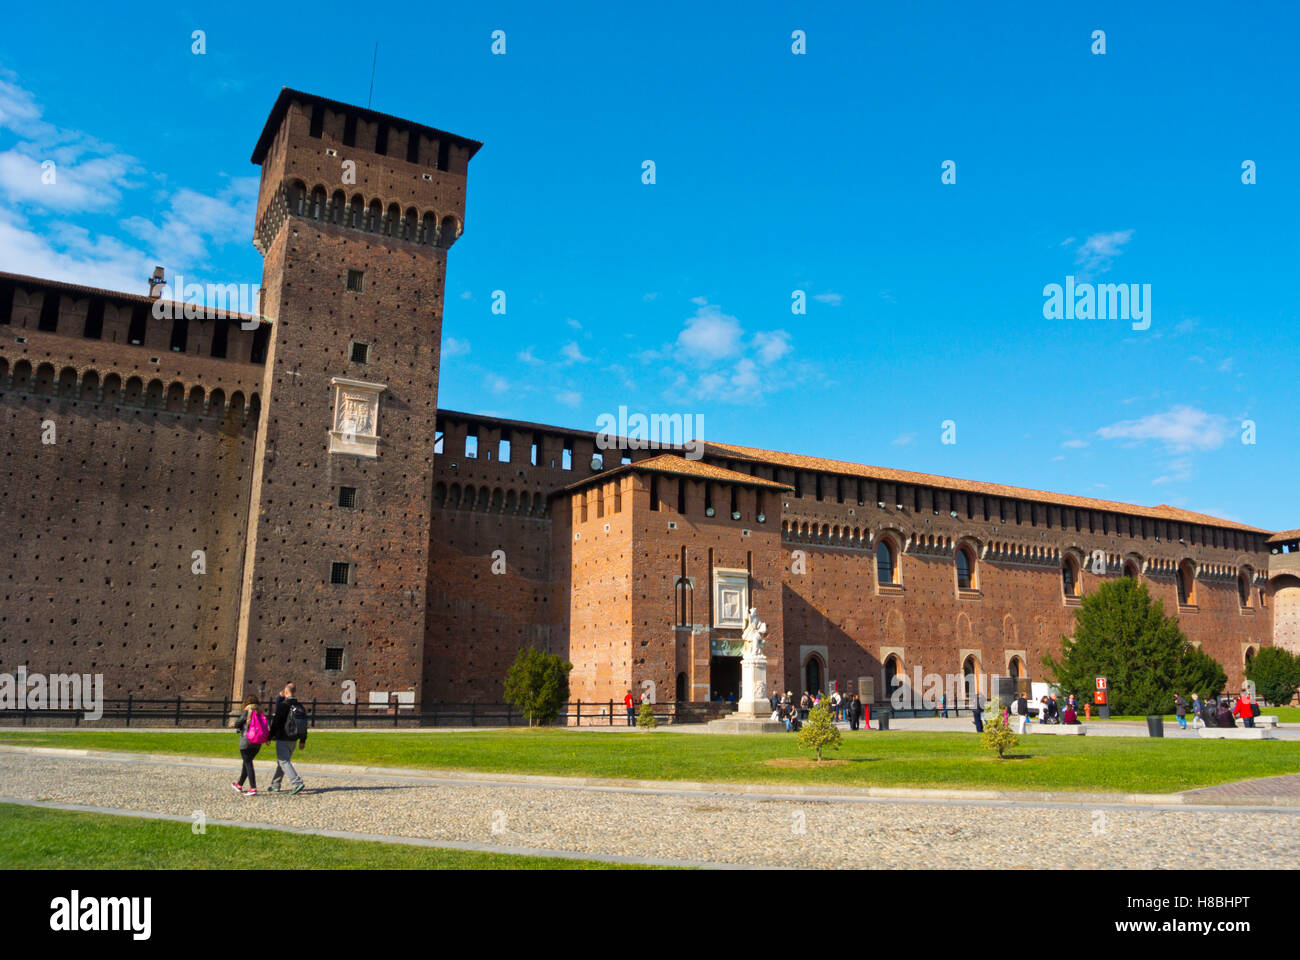 Torre di Bona, Cortile delle Armi courtyard, Castello Sforzesco, Parco Sempione, Milan, Lombardy, Italy Stock Photo